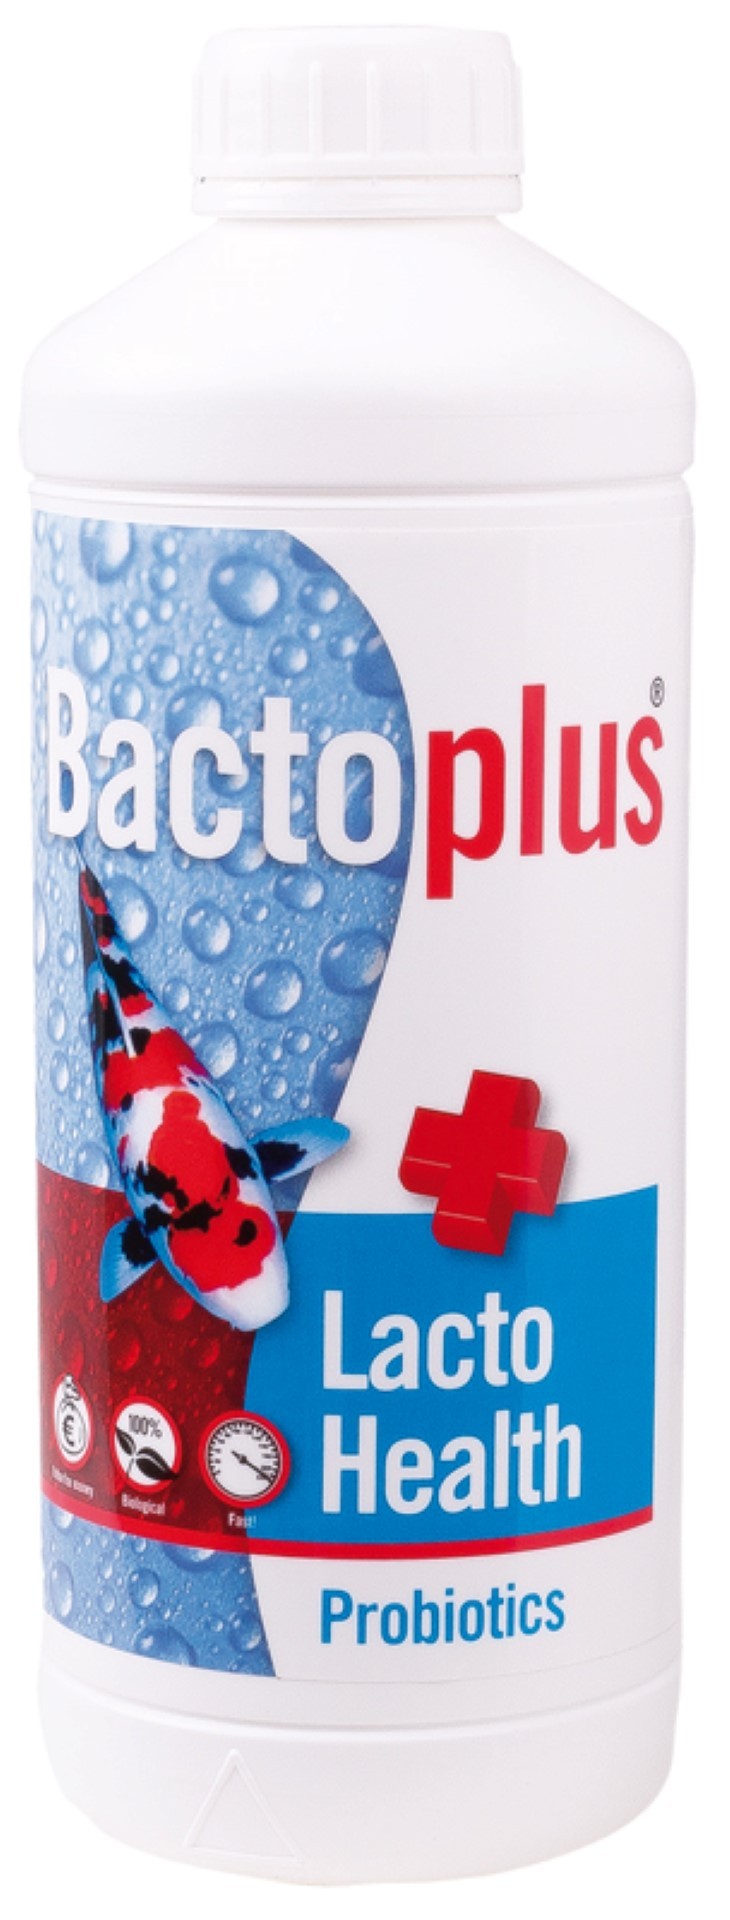 https://www.warentuin.nl/media/catalog/product/1/7/1778717496170972_aquadistri_aquarium_accessoire_bactoplus_lacto_health_1l_6f1a.jpg